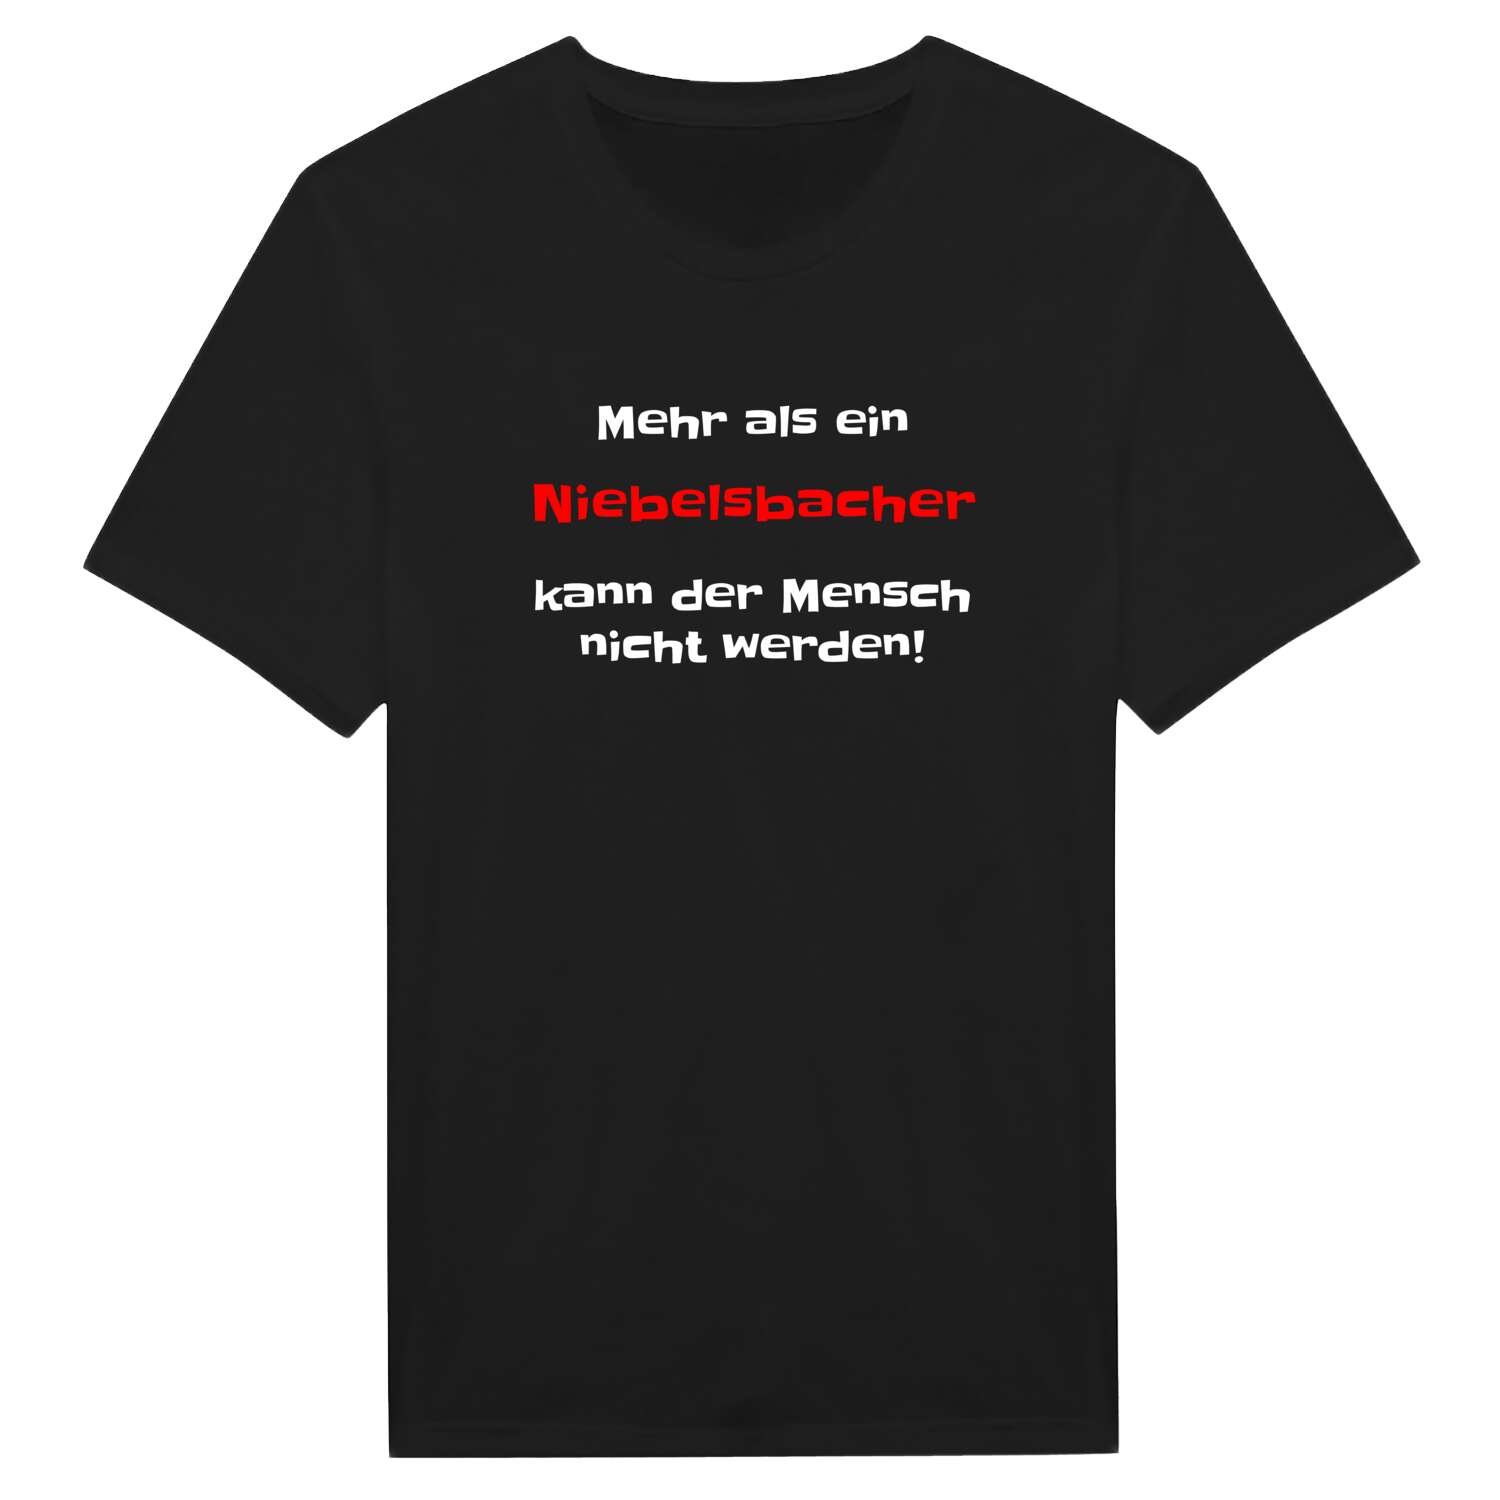 Niebelsbach T-Shirt »Mehr als ein«